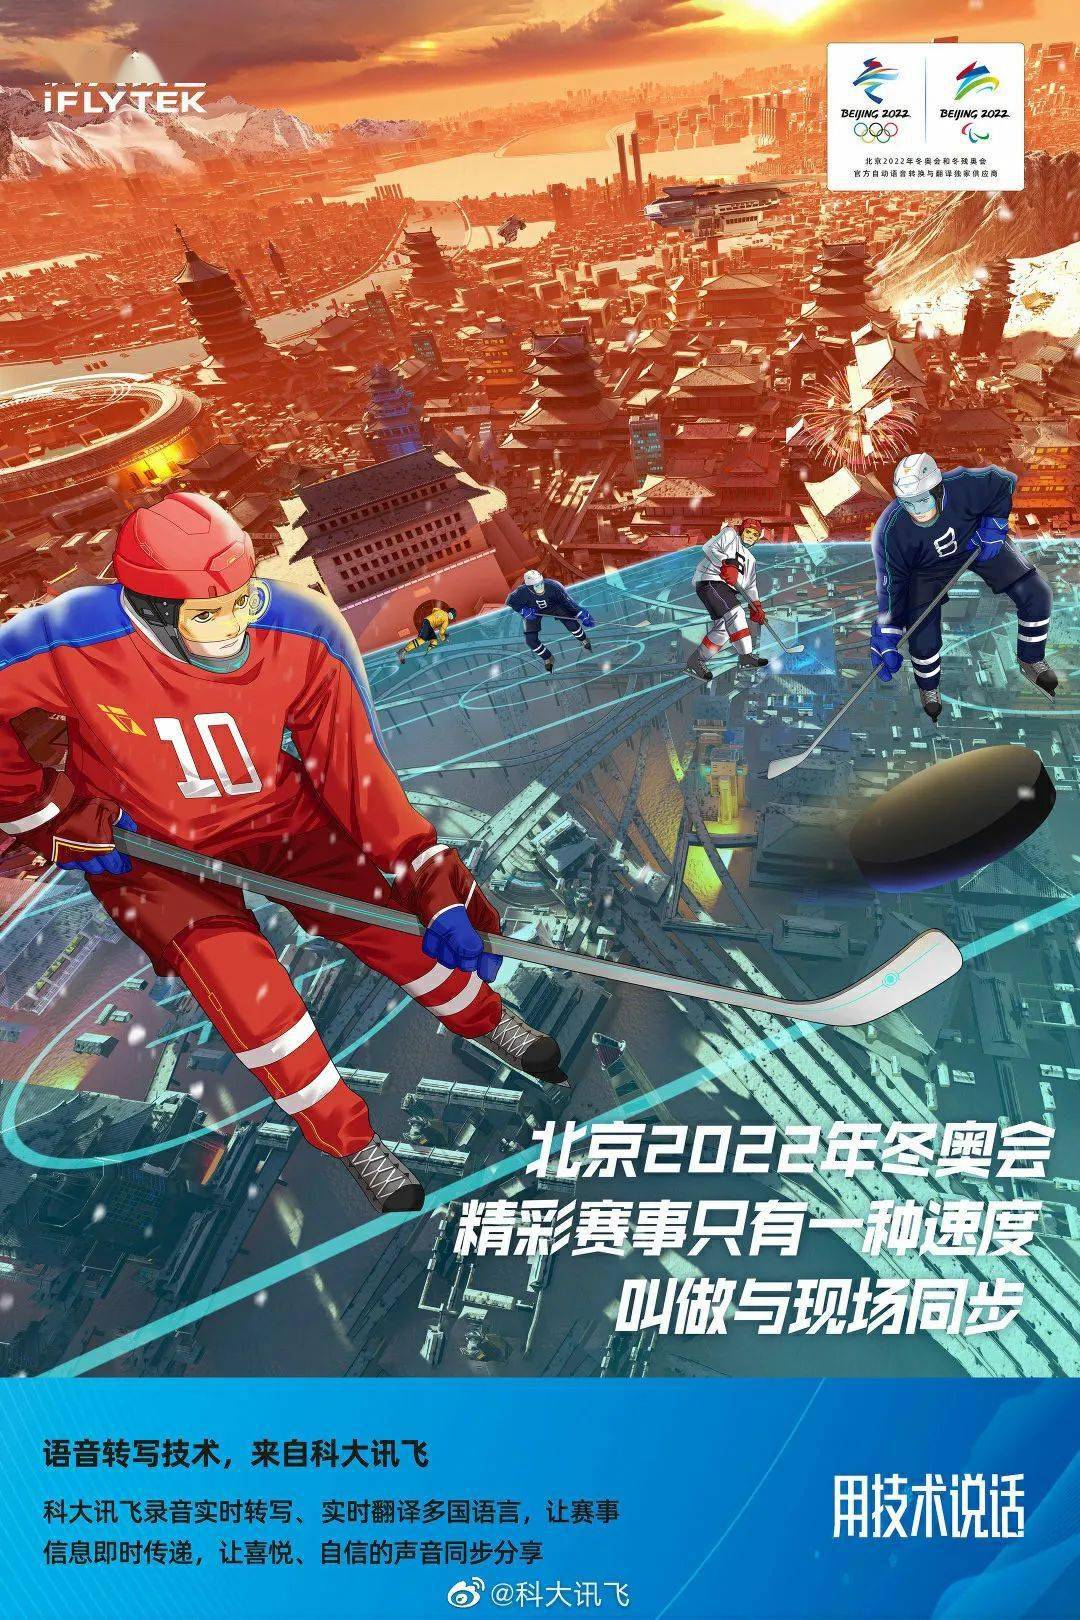 安踏北京冬奥会广告图片